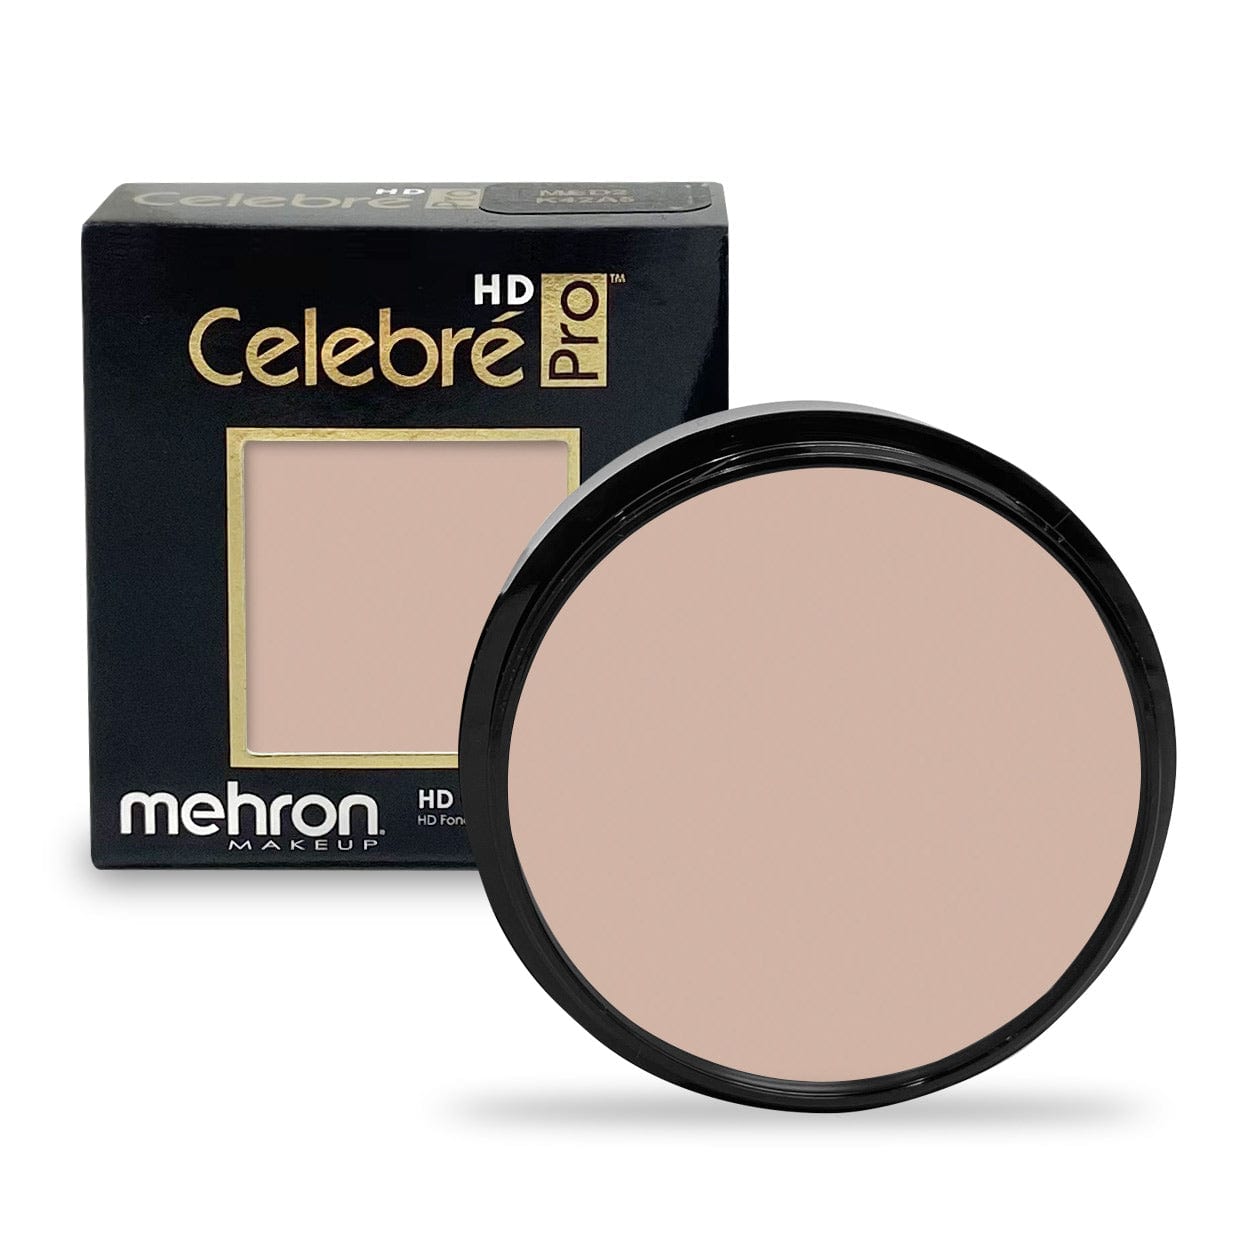 Mehron Celebre Pro HD-Cream 25g - OS6 Medium Olive - Mehron